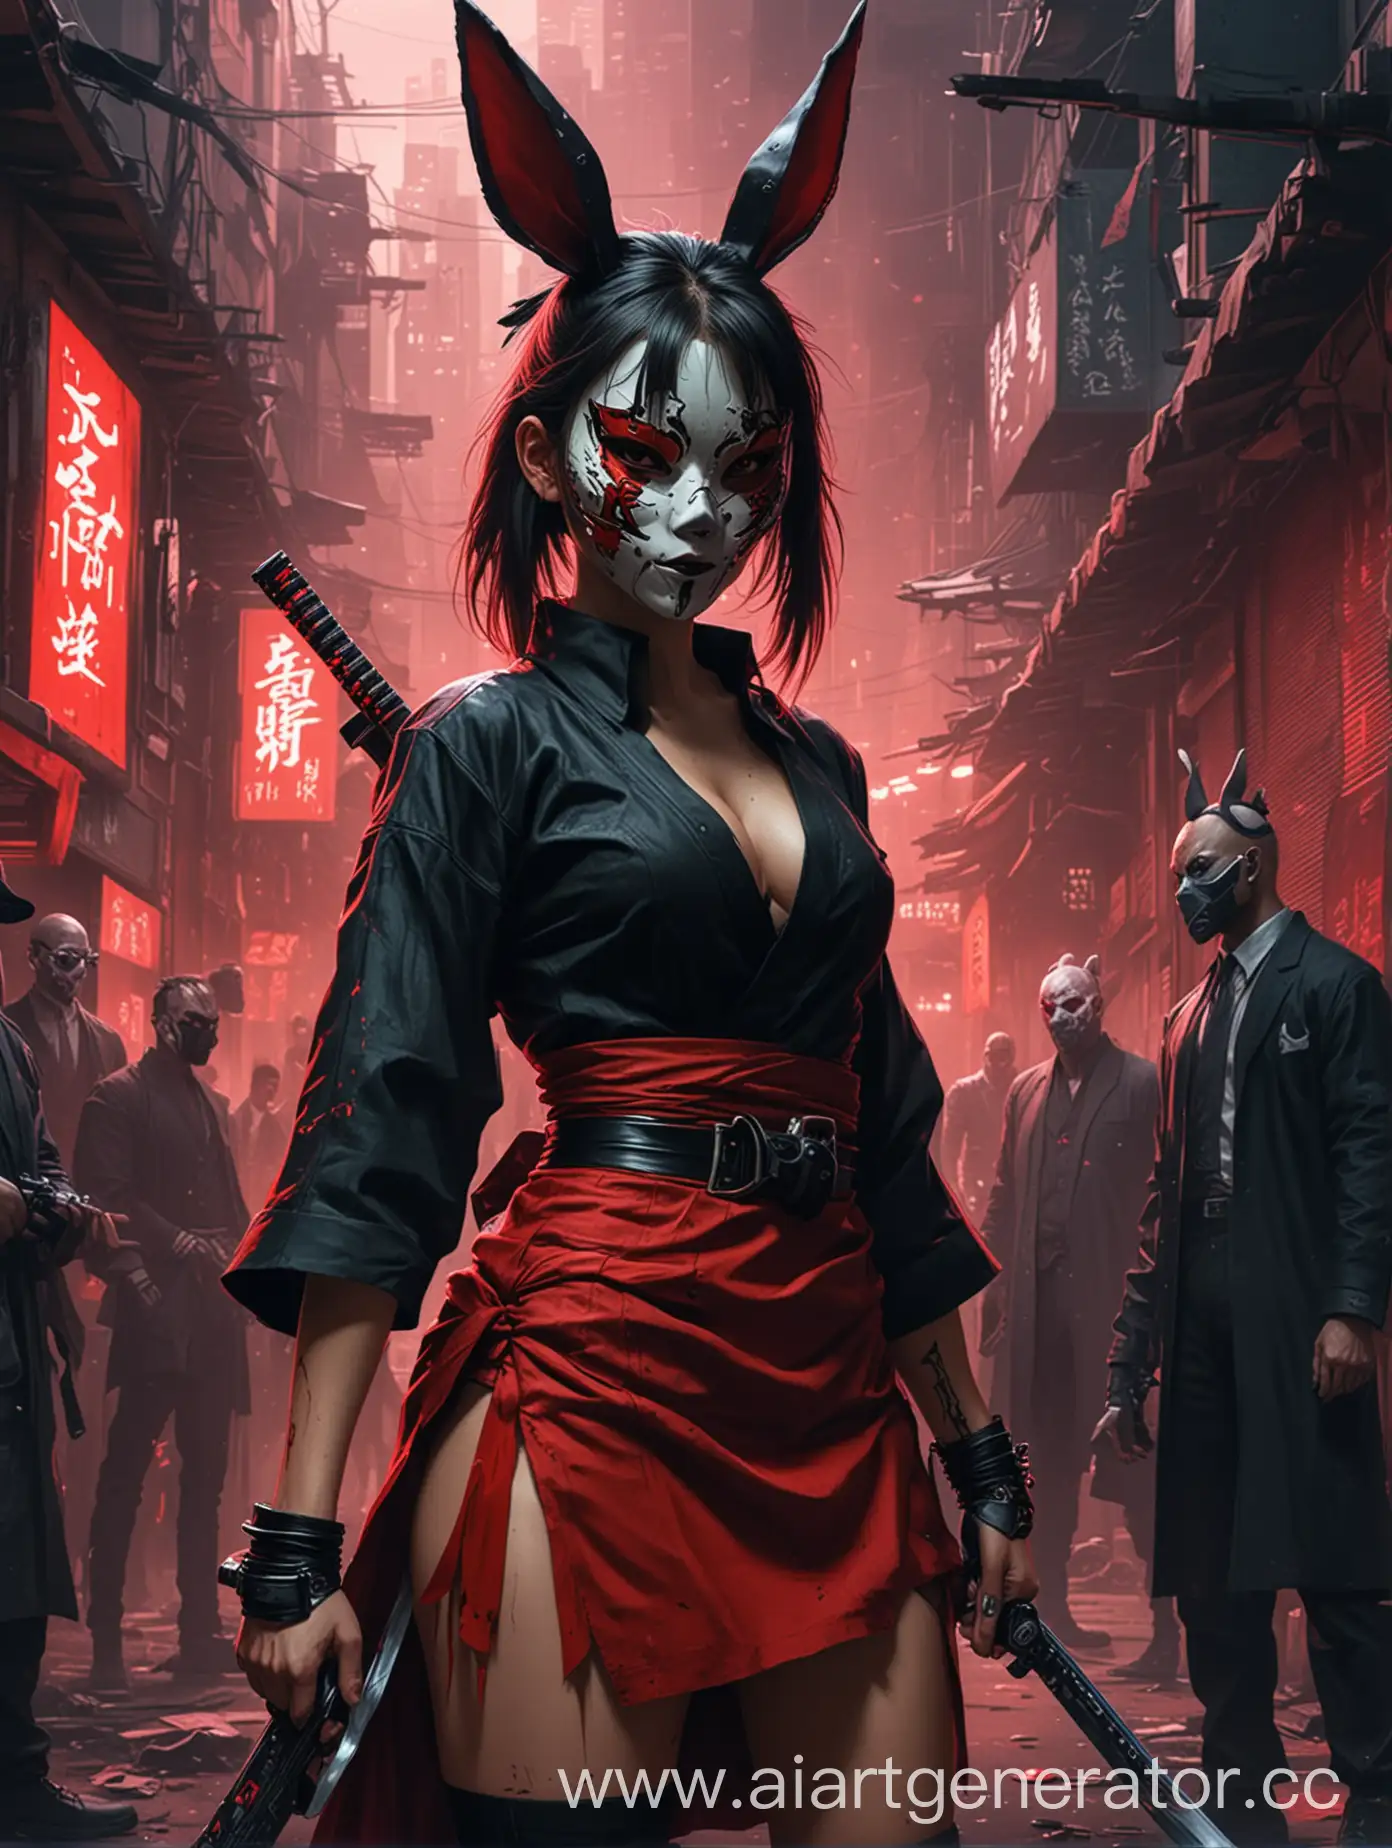 Киберпанк самурай в черной рубашке и в маске зайца режет мафиози и девушку в красном платье 